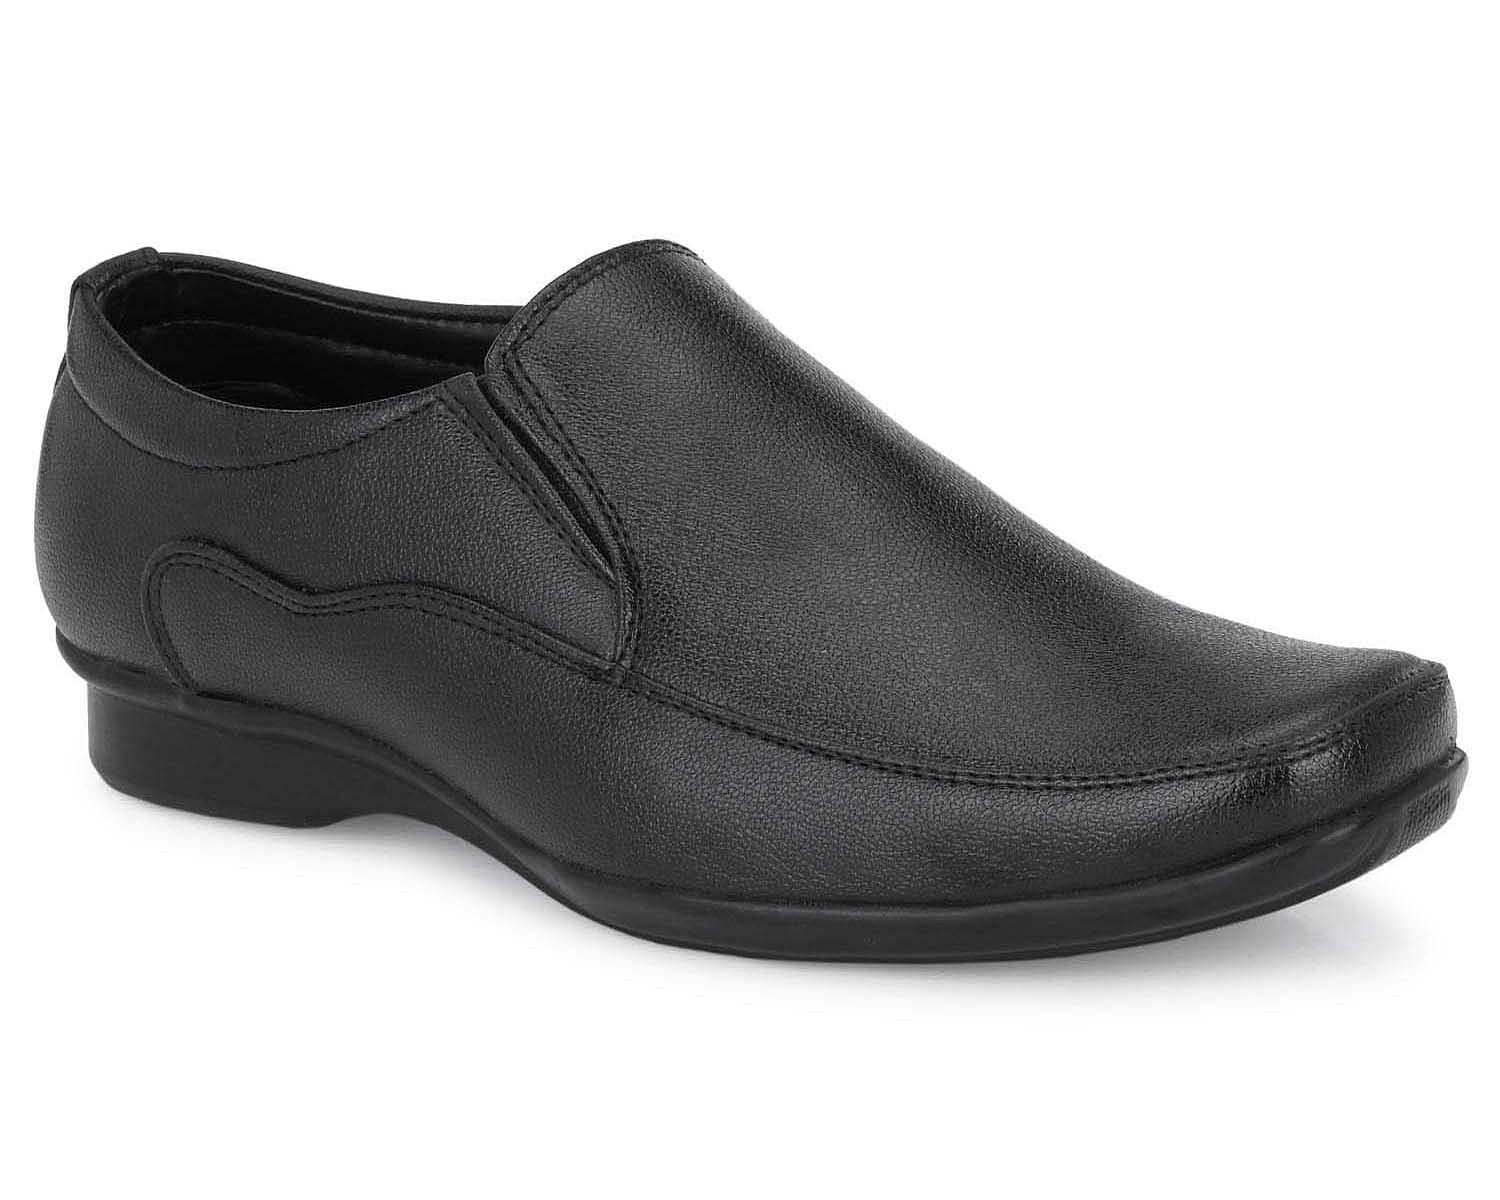 Pair-it Men moccasin Formal Shoes - MN-RYDER215 - Black